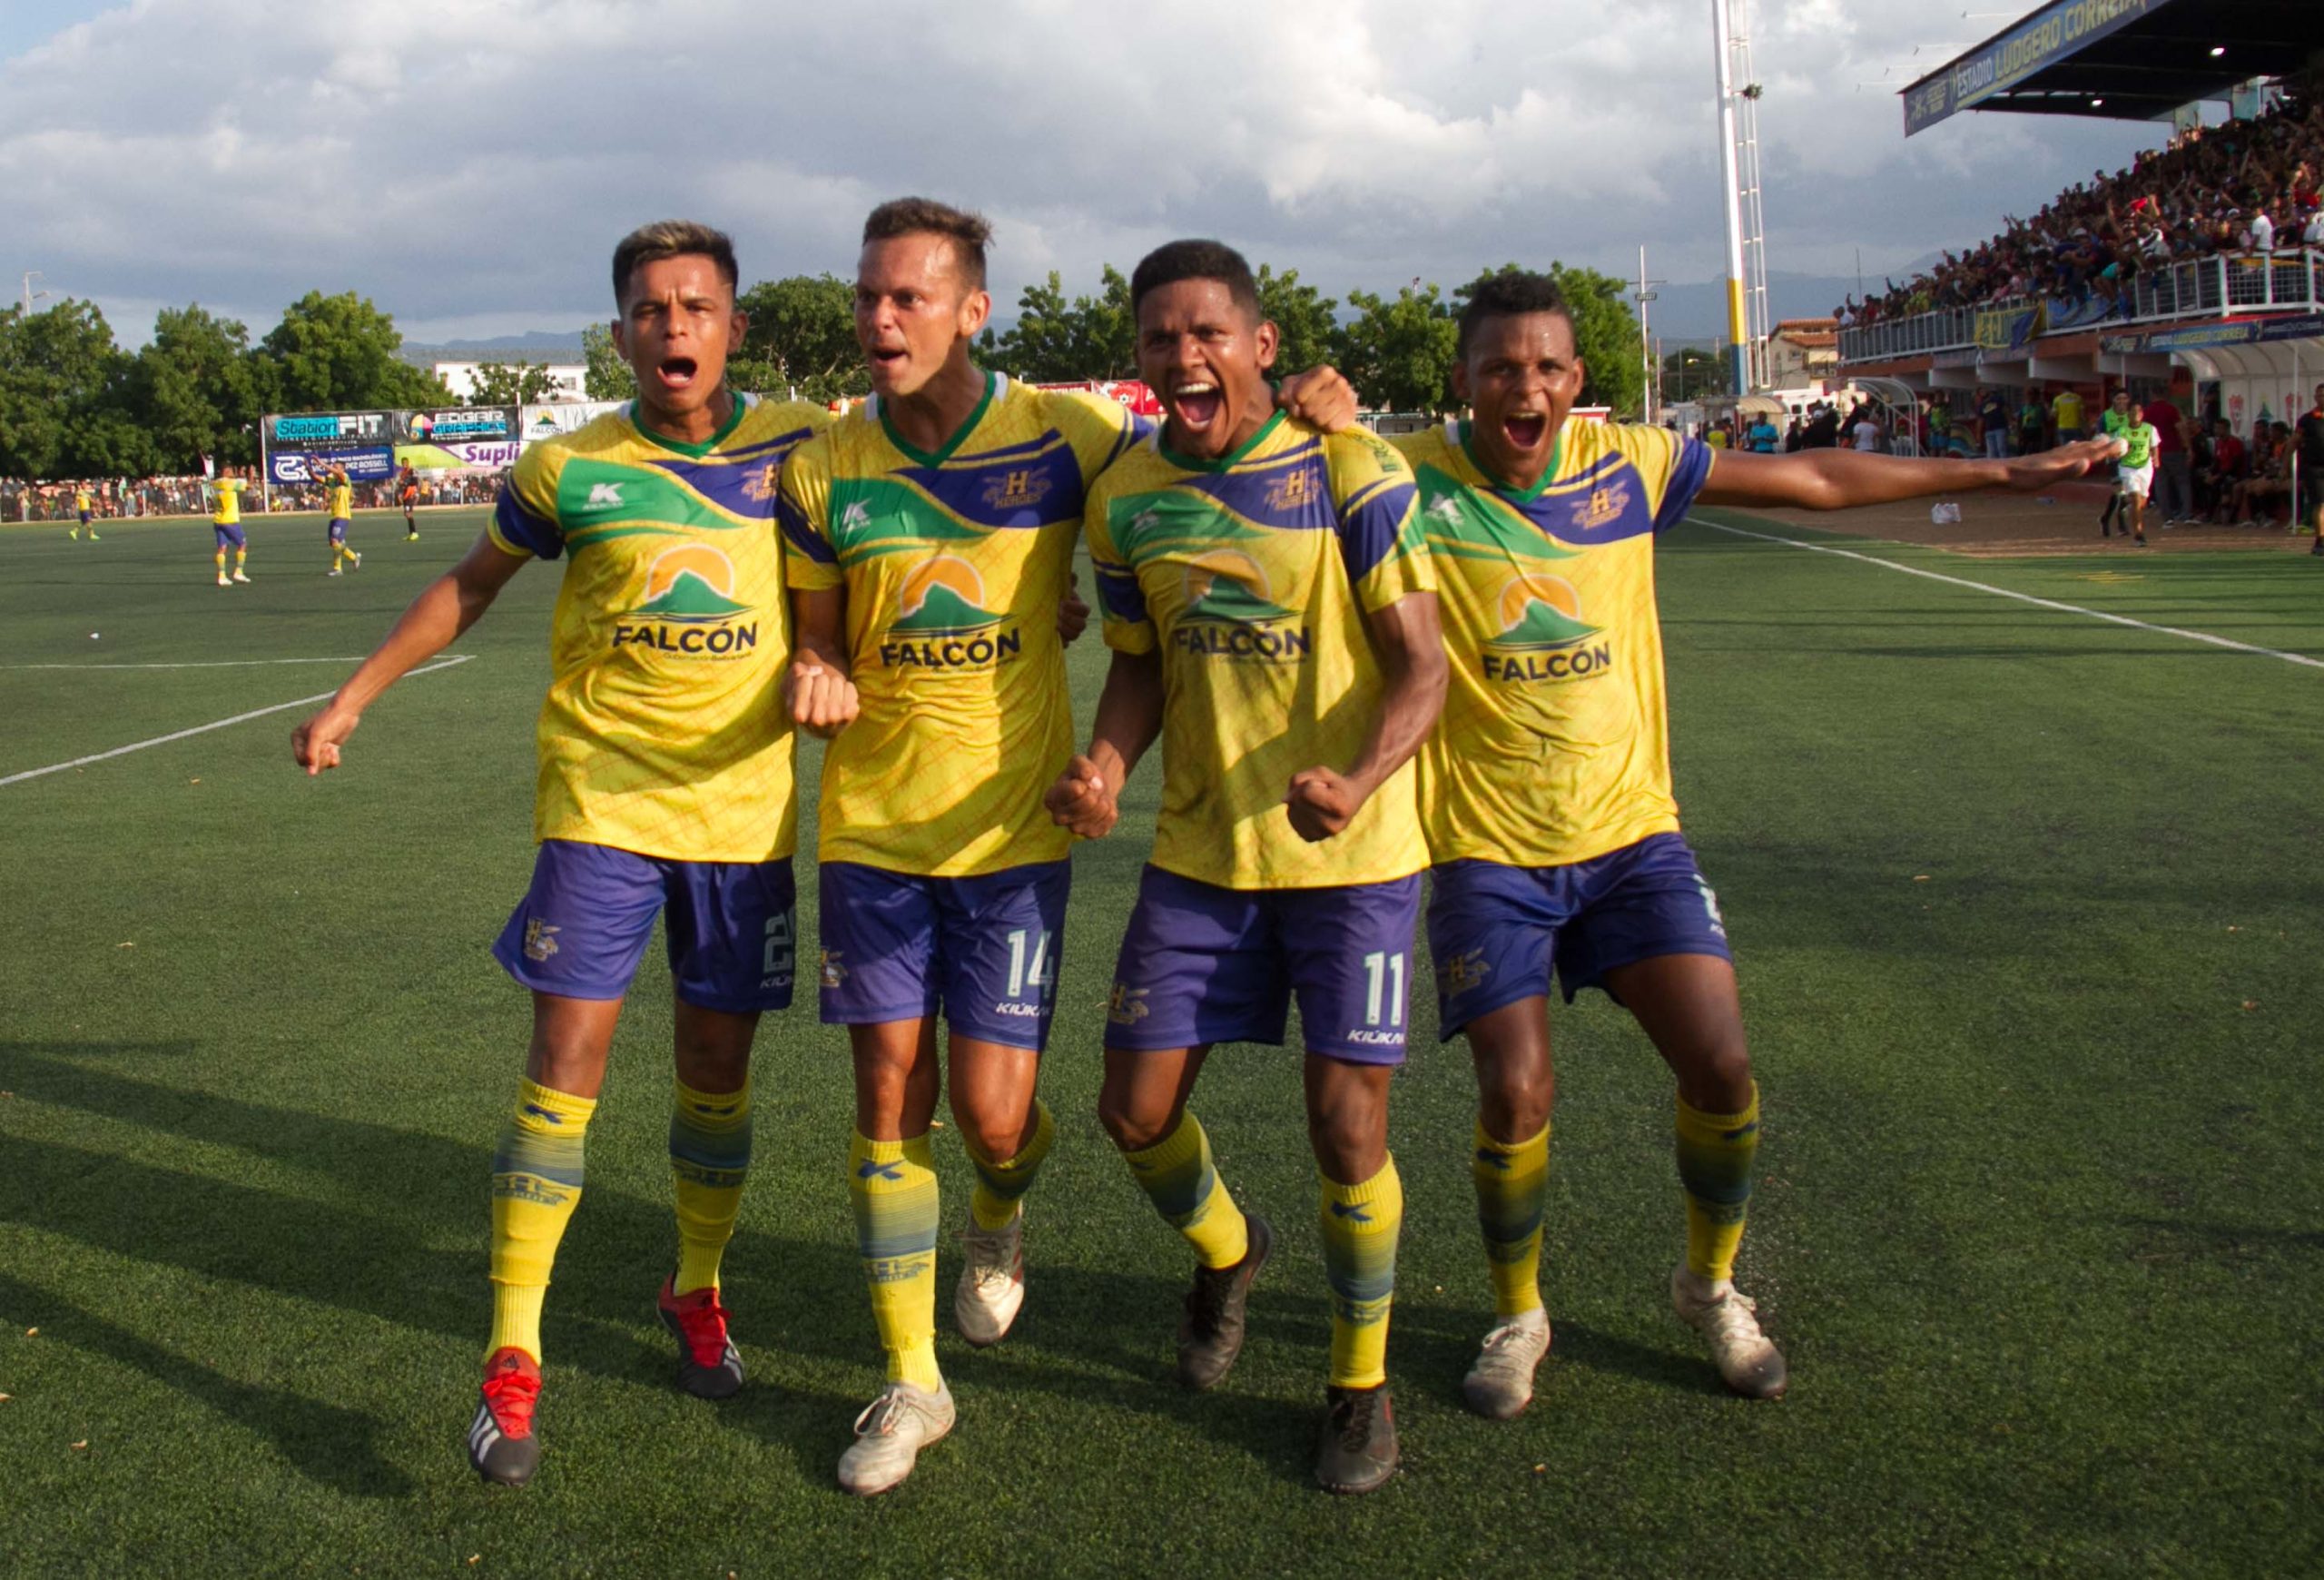 Héroes de Falcón FC comienza el camino por el titulo en la Liga Futve 2 y conquistar un puesta en la primera división.